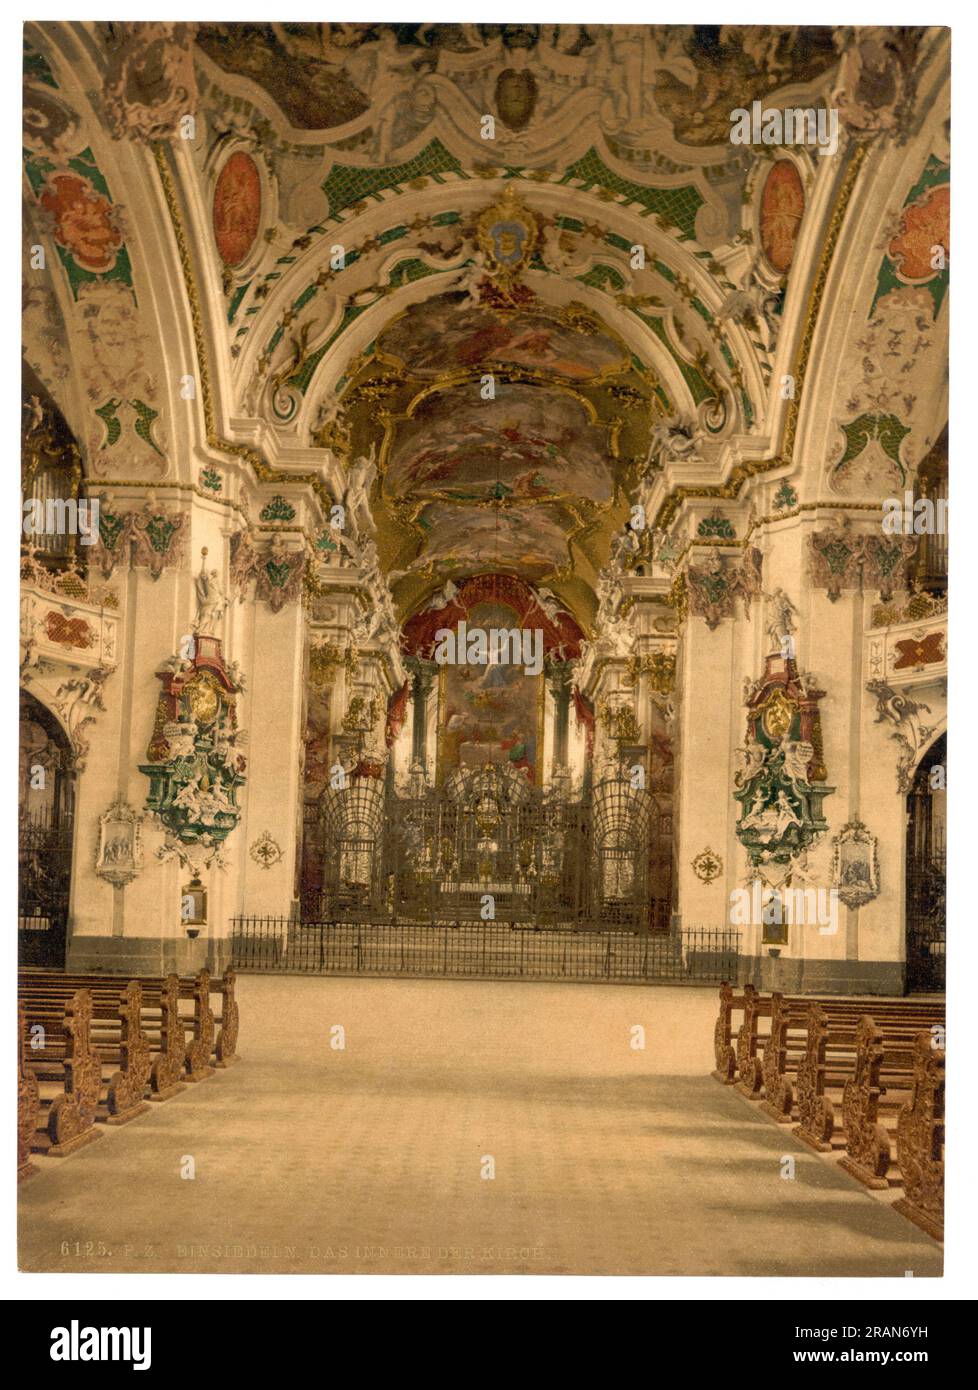 Einsiedeln Abbey, interior of church, Einsiedeln, Schwyz, Switzerland 1890. Stock Photo